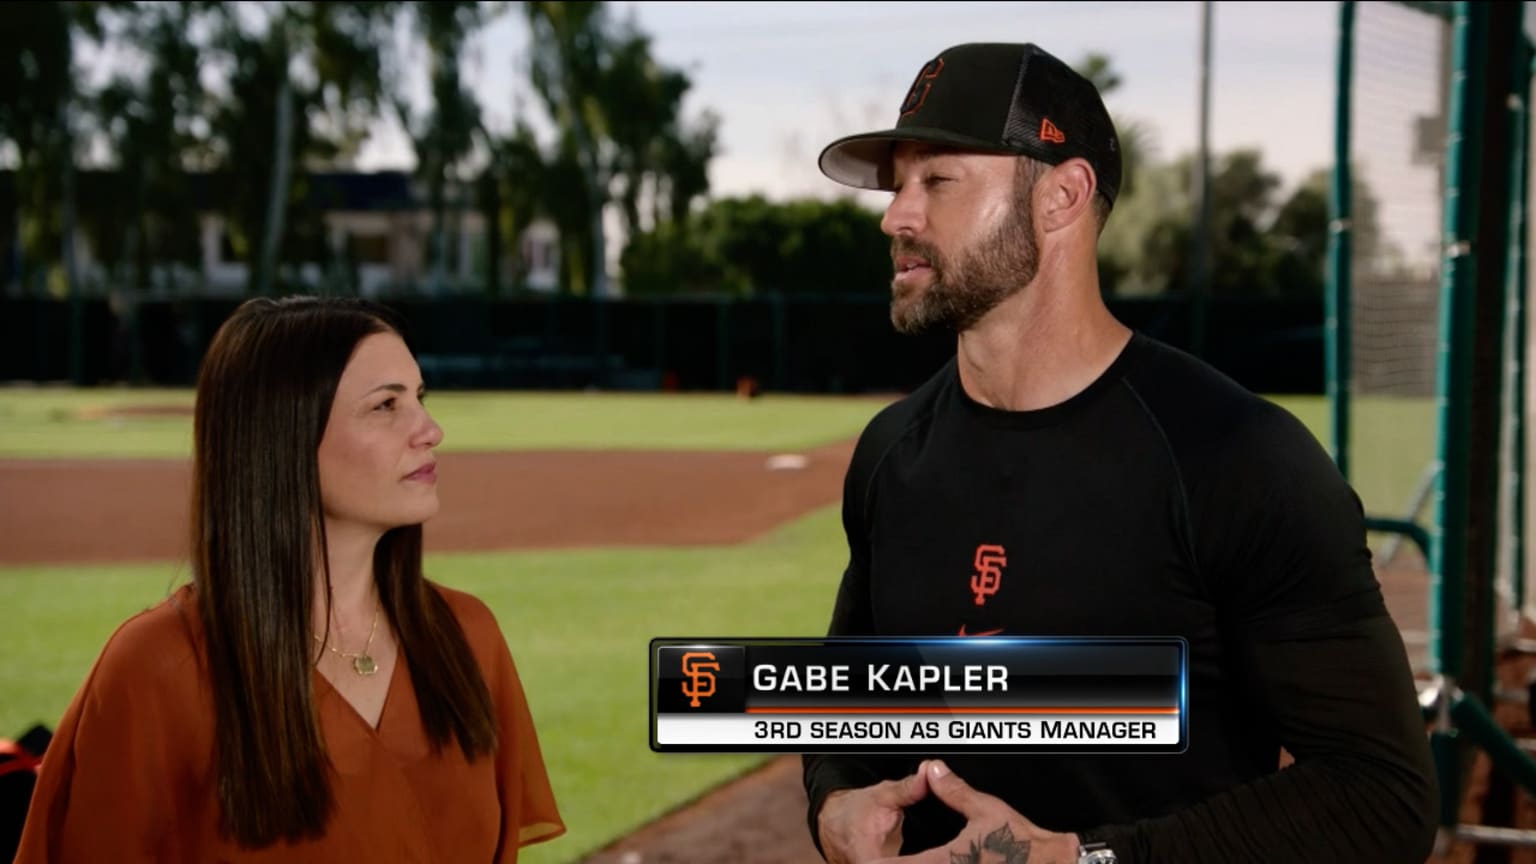 Is Gabe Kapler married?